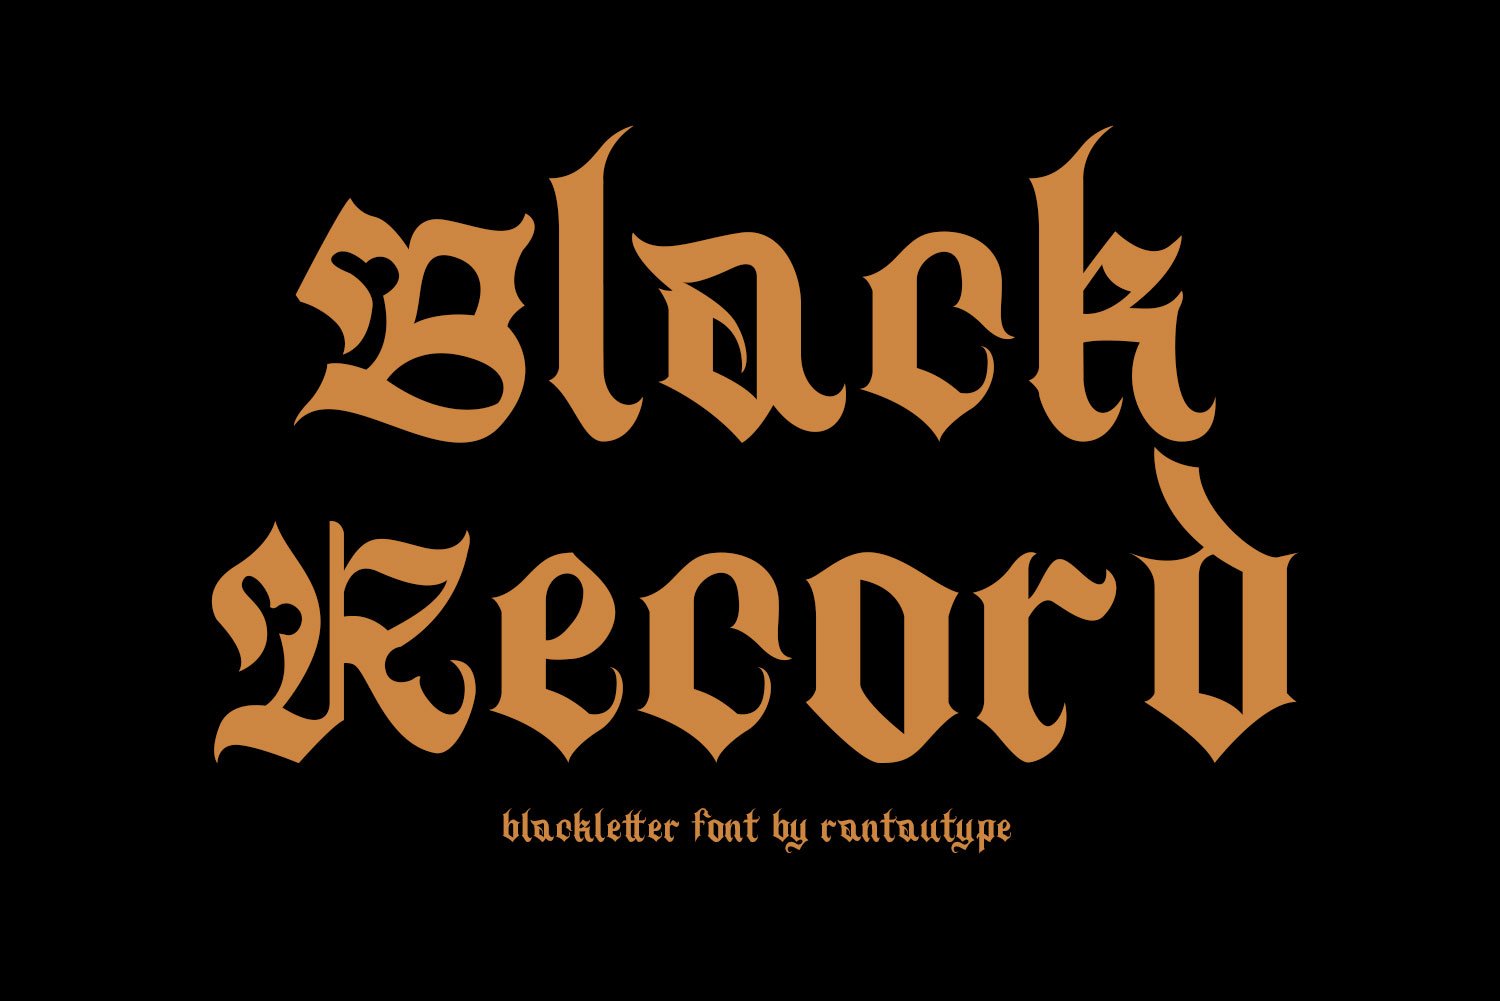 Black Record - Blackletter Font cover image.